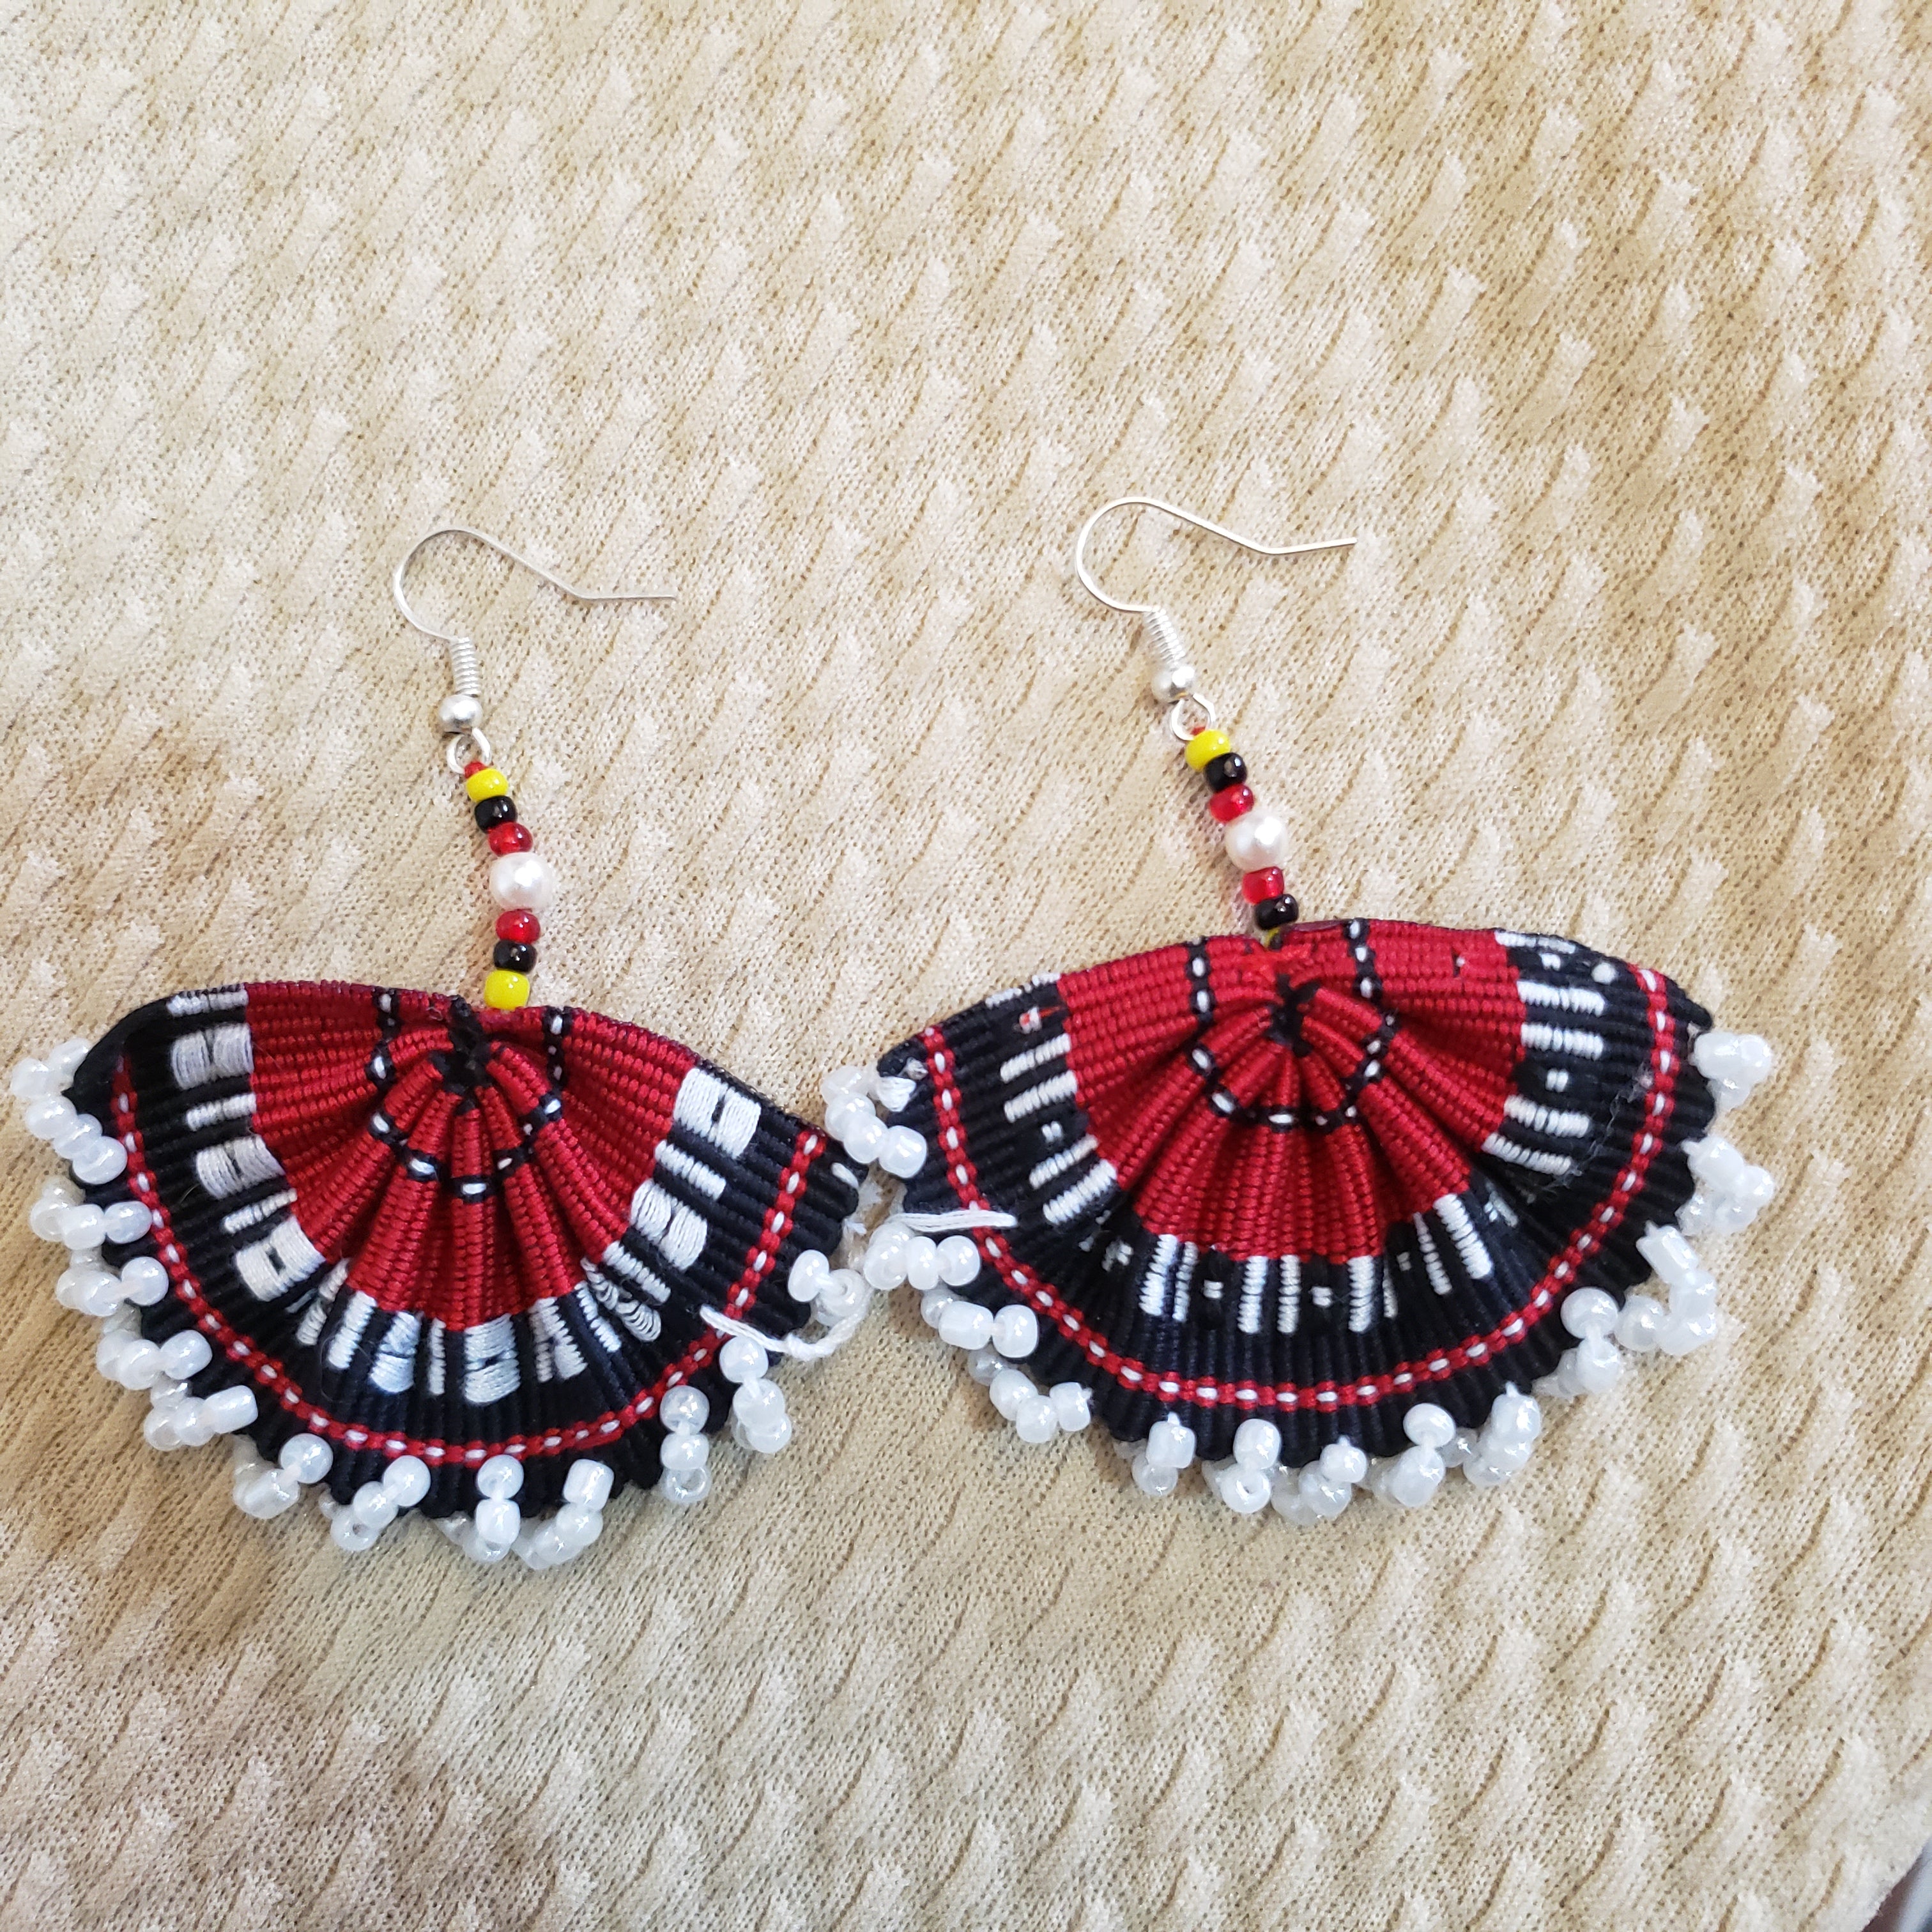 Kalinga Woven Earrings with Beads